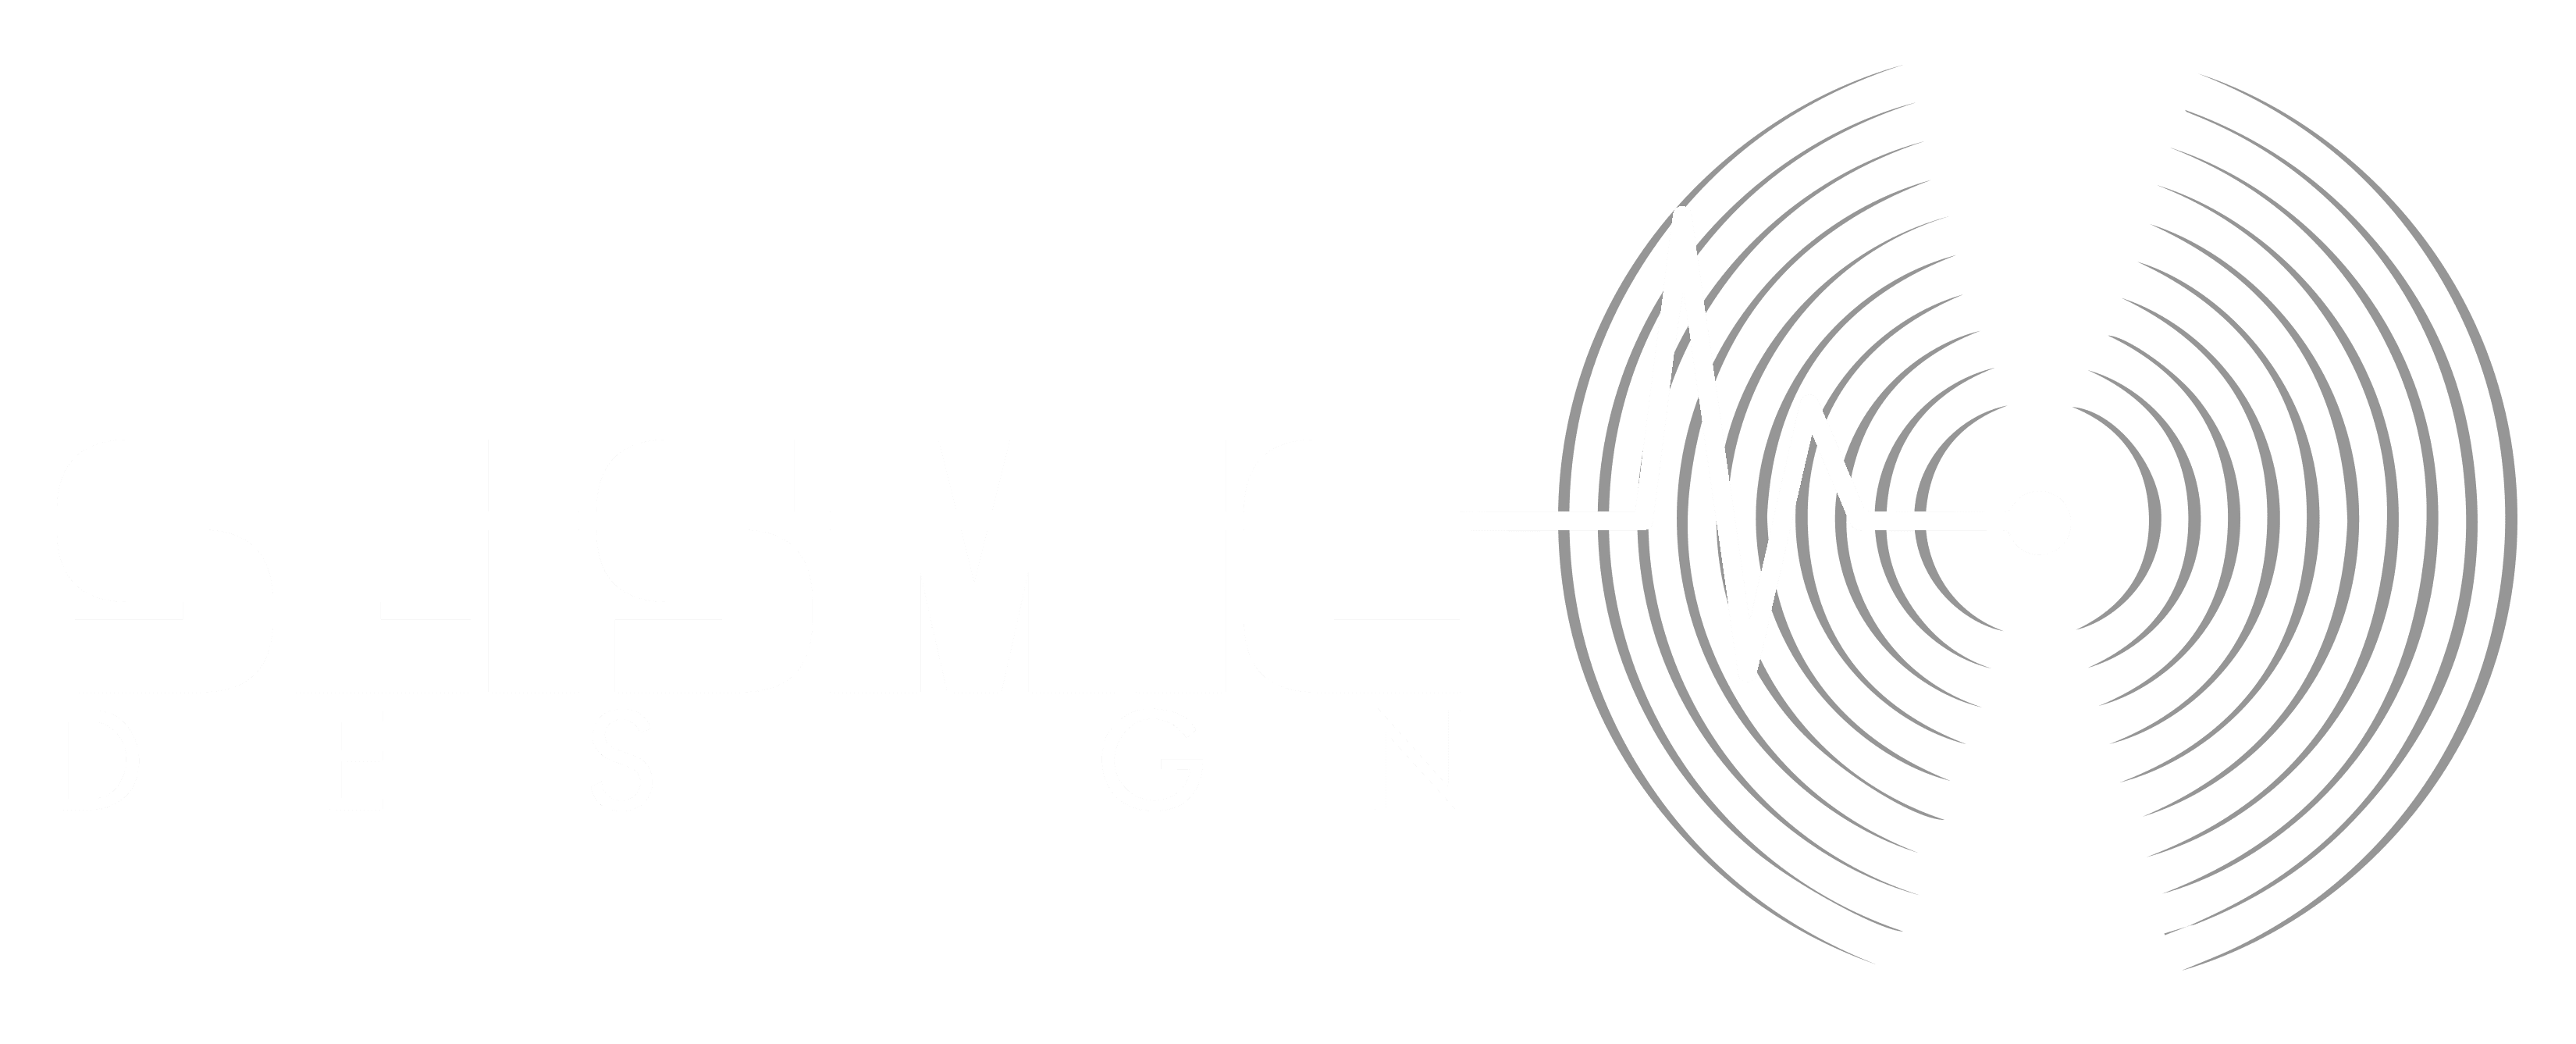 Seismic Design